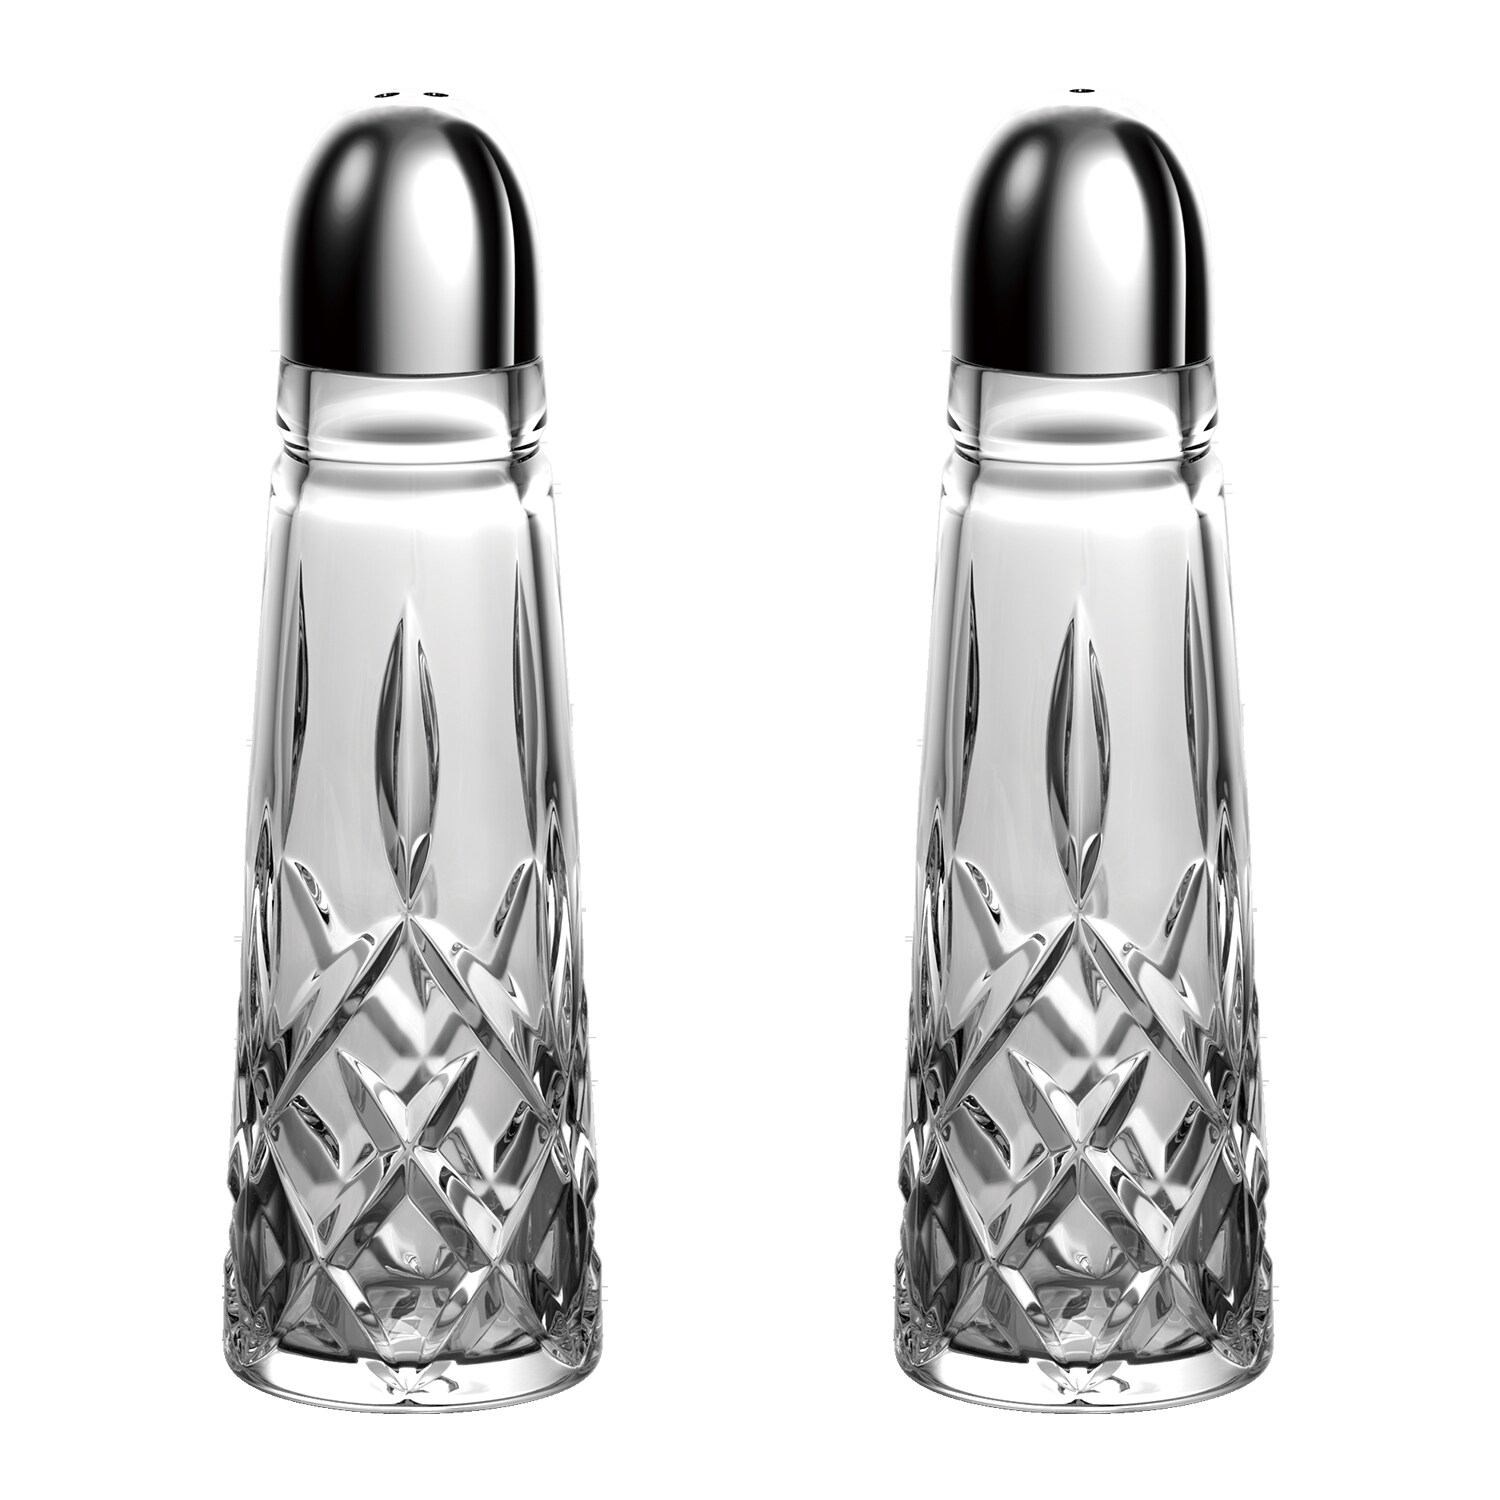 Fancy Lead Crystal Salt & Pepper Shakers by Nachtmann W. 